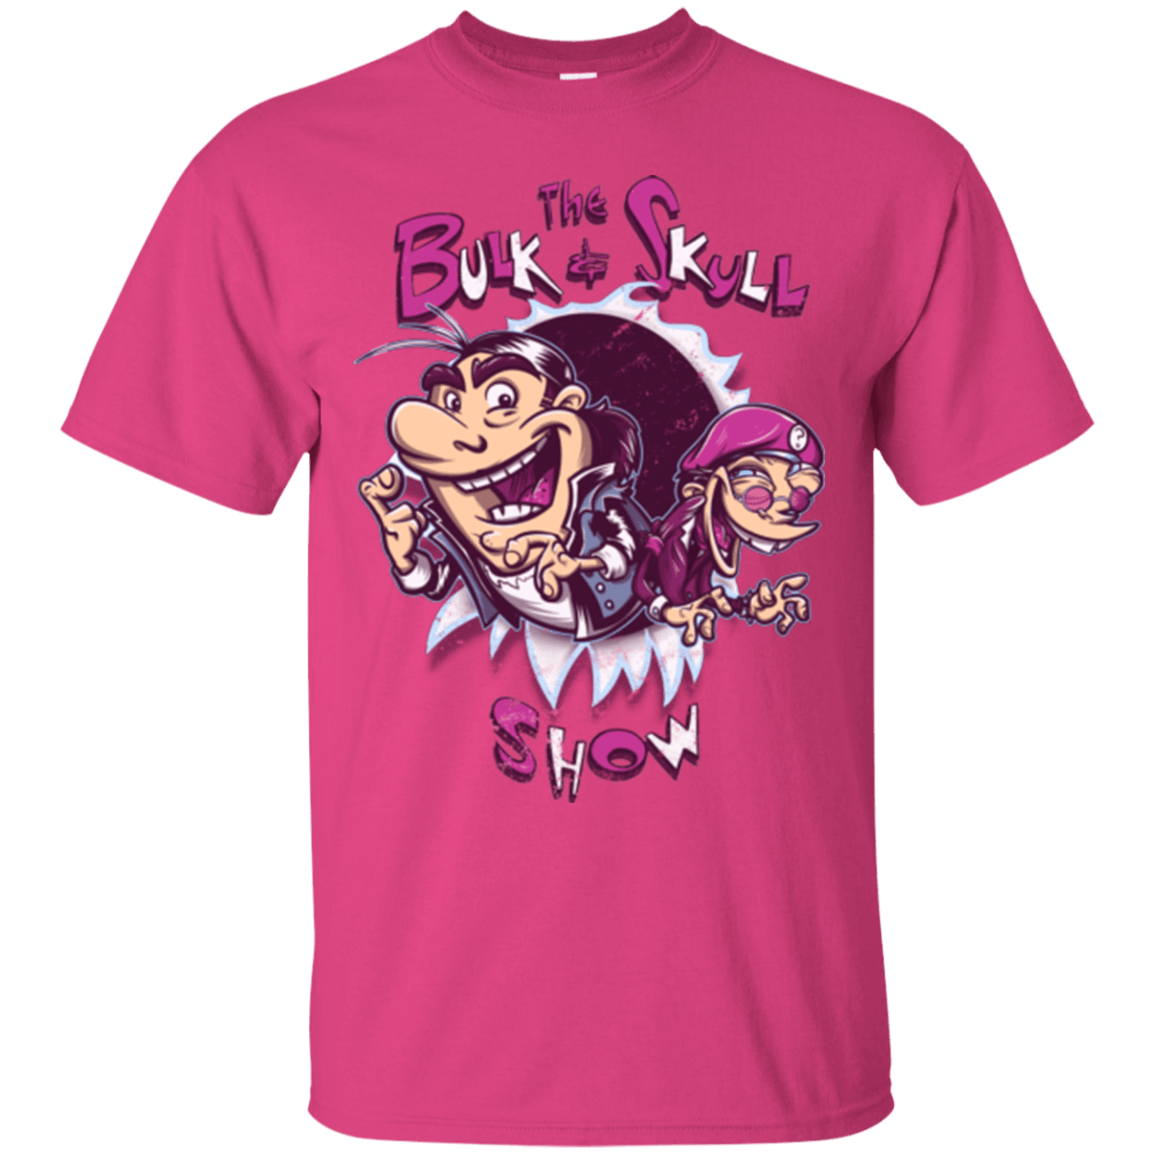 børste moden patient Bulk and Skull Show T-Shirt – Pop Up Tee